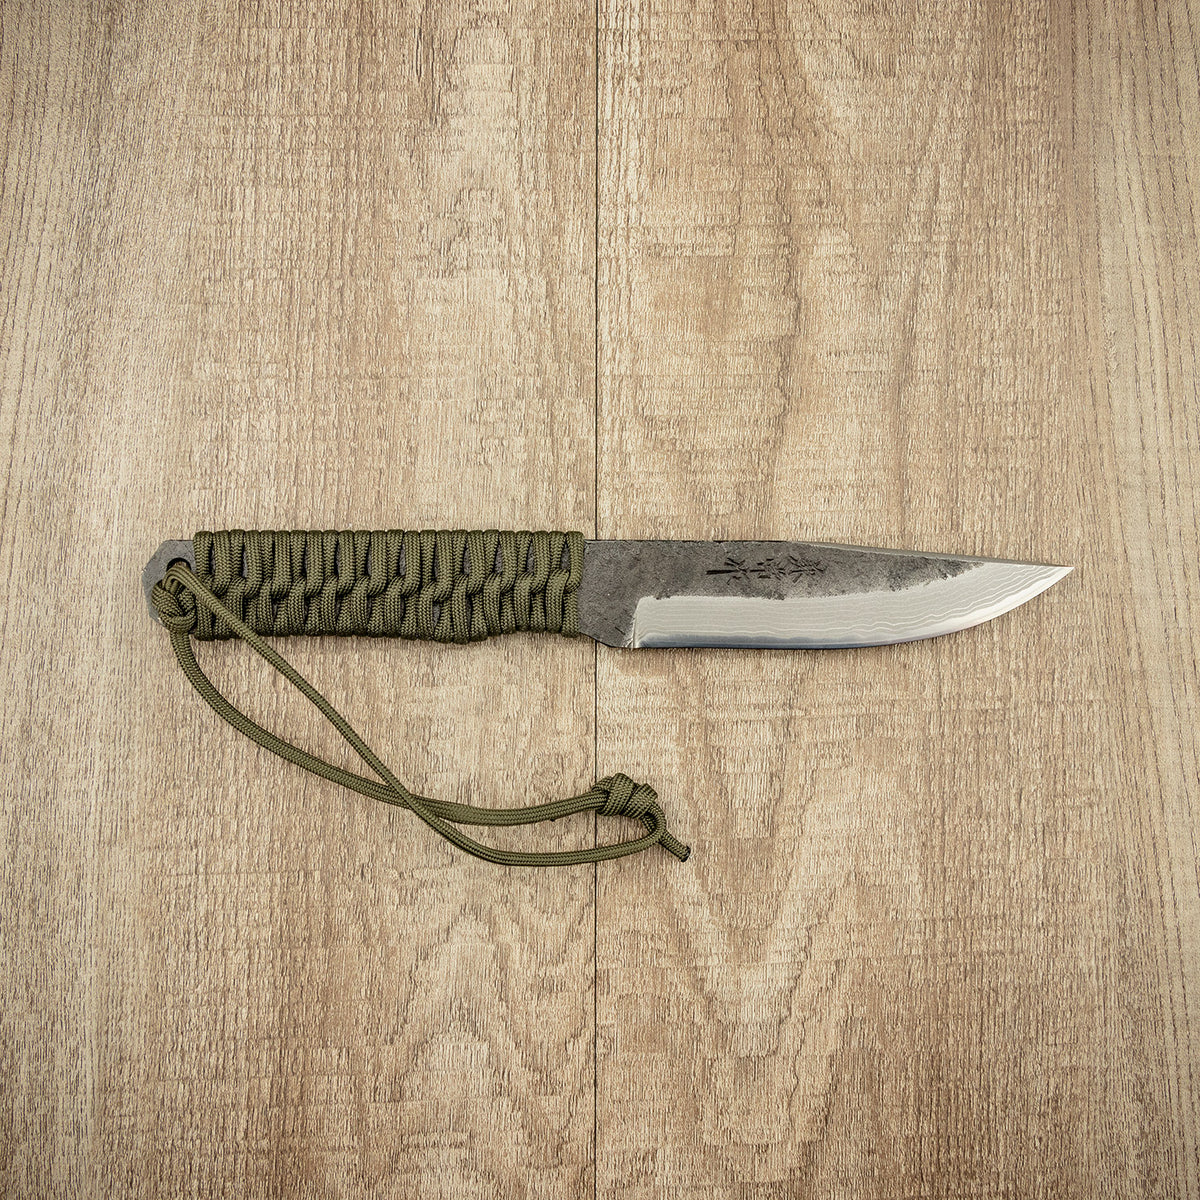 Seki Kanetsune &quot;KURO-TSUNO&quot; Outdoor Knife 120MM